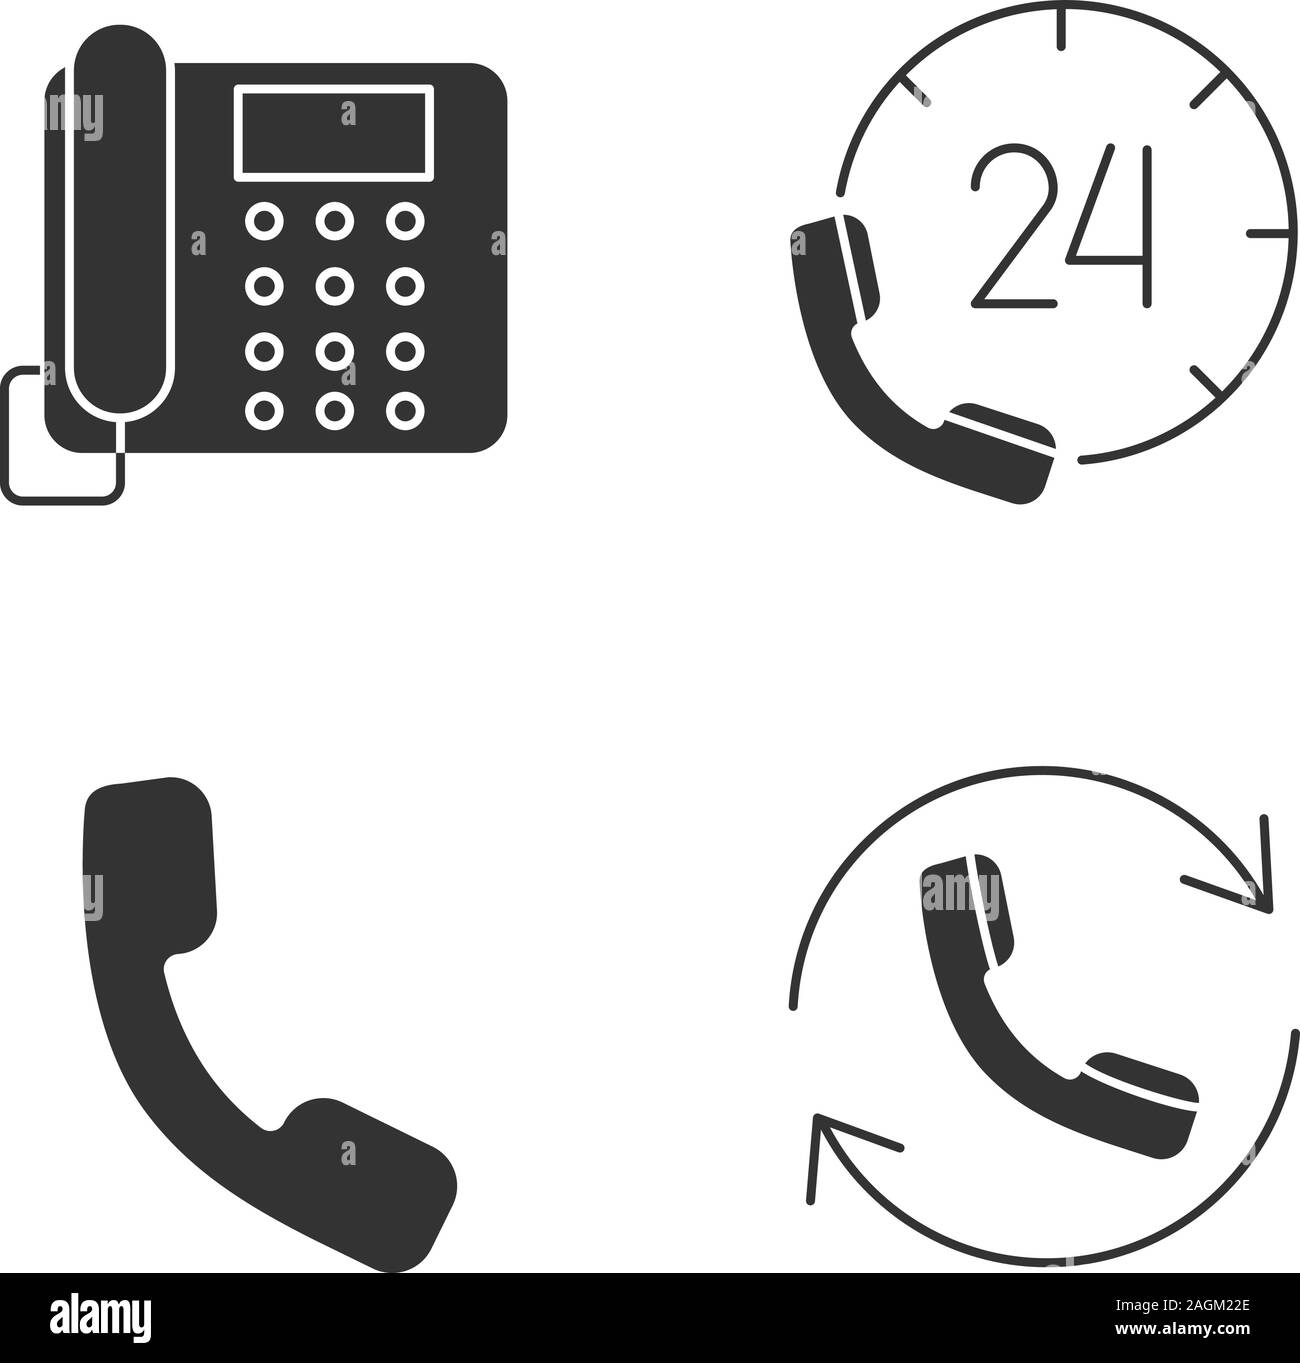 Glyphe de communication téléphonique icons set. Téléphone fixe, hotline, combiné, appelant. Symboles de Silhouette. Vector illustration isolé Illustration de Vecteur